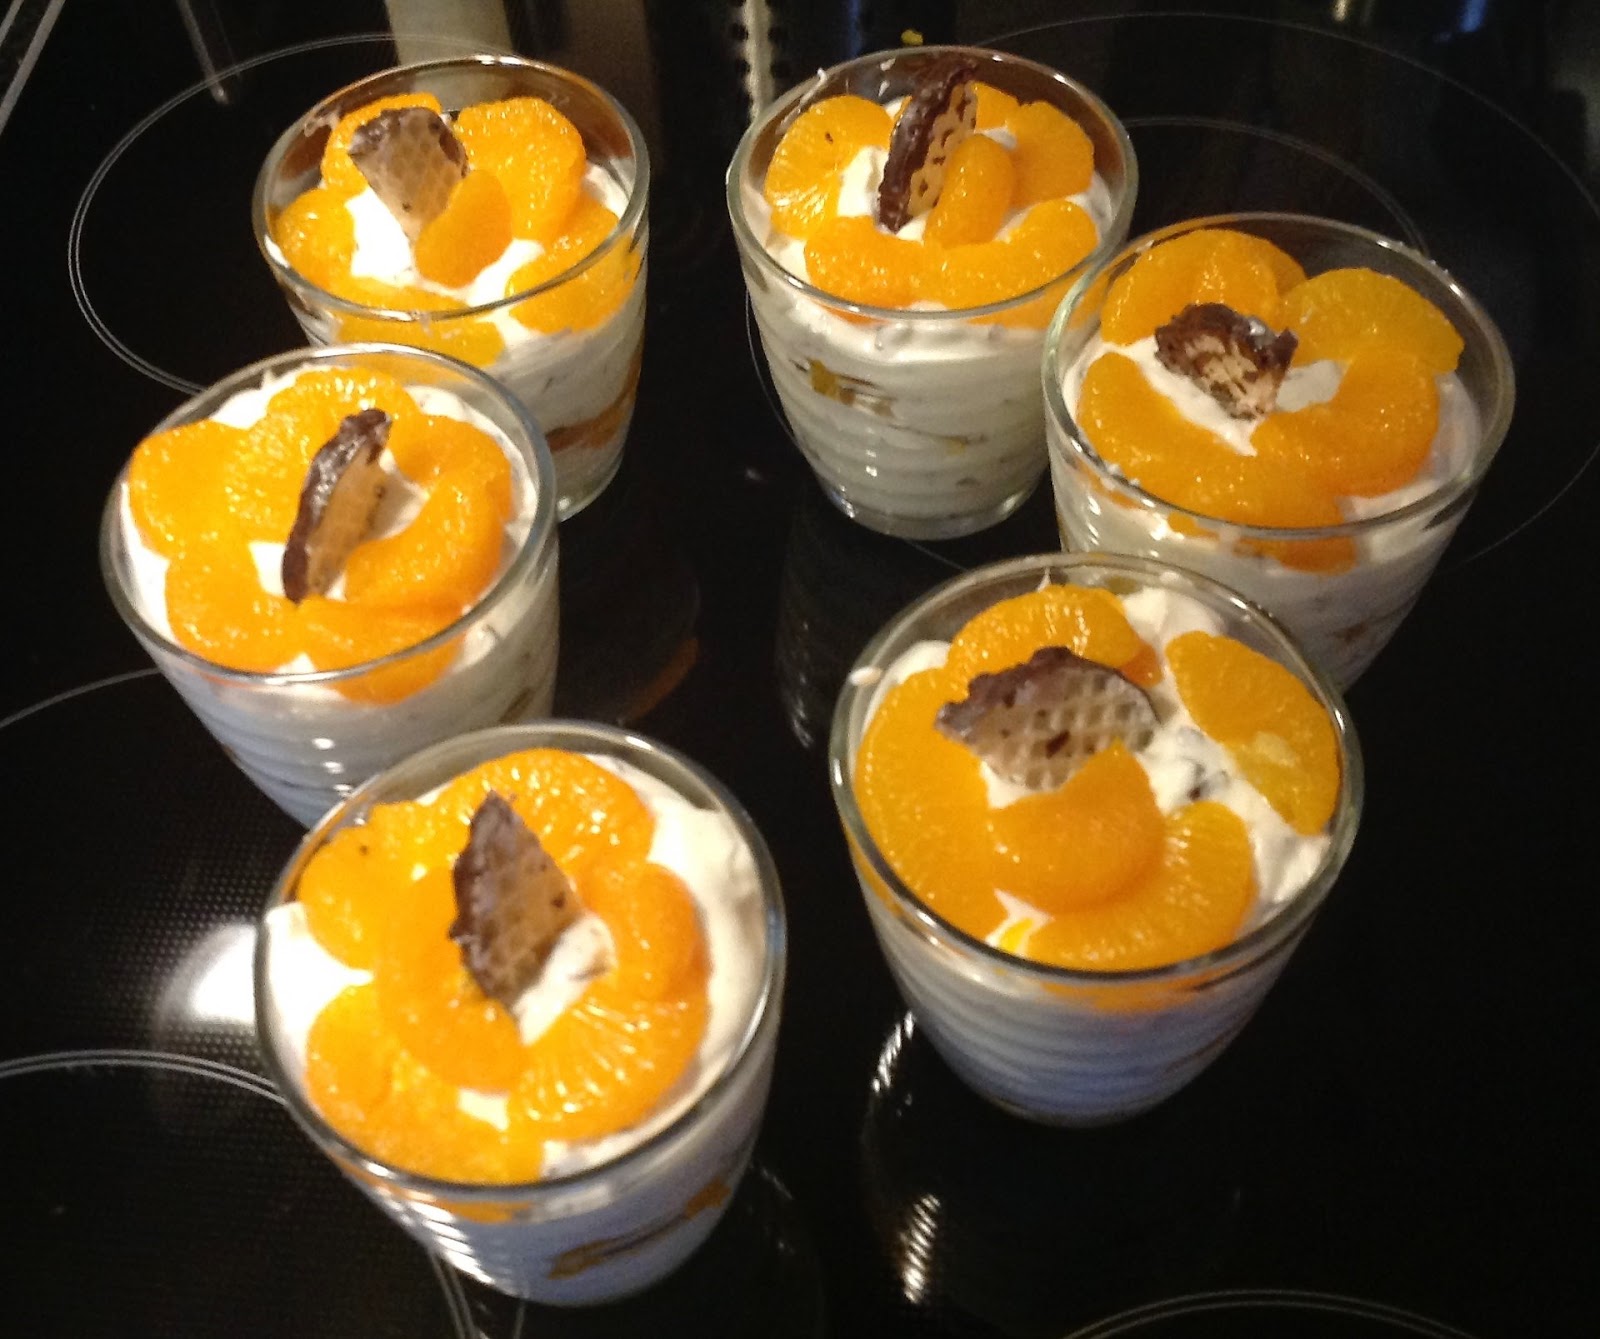 Marlis + Peters Küchenwelt: Schokokuss-Mandarinen-Dessert